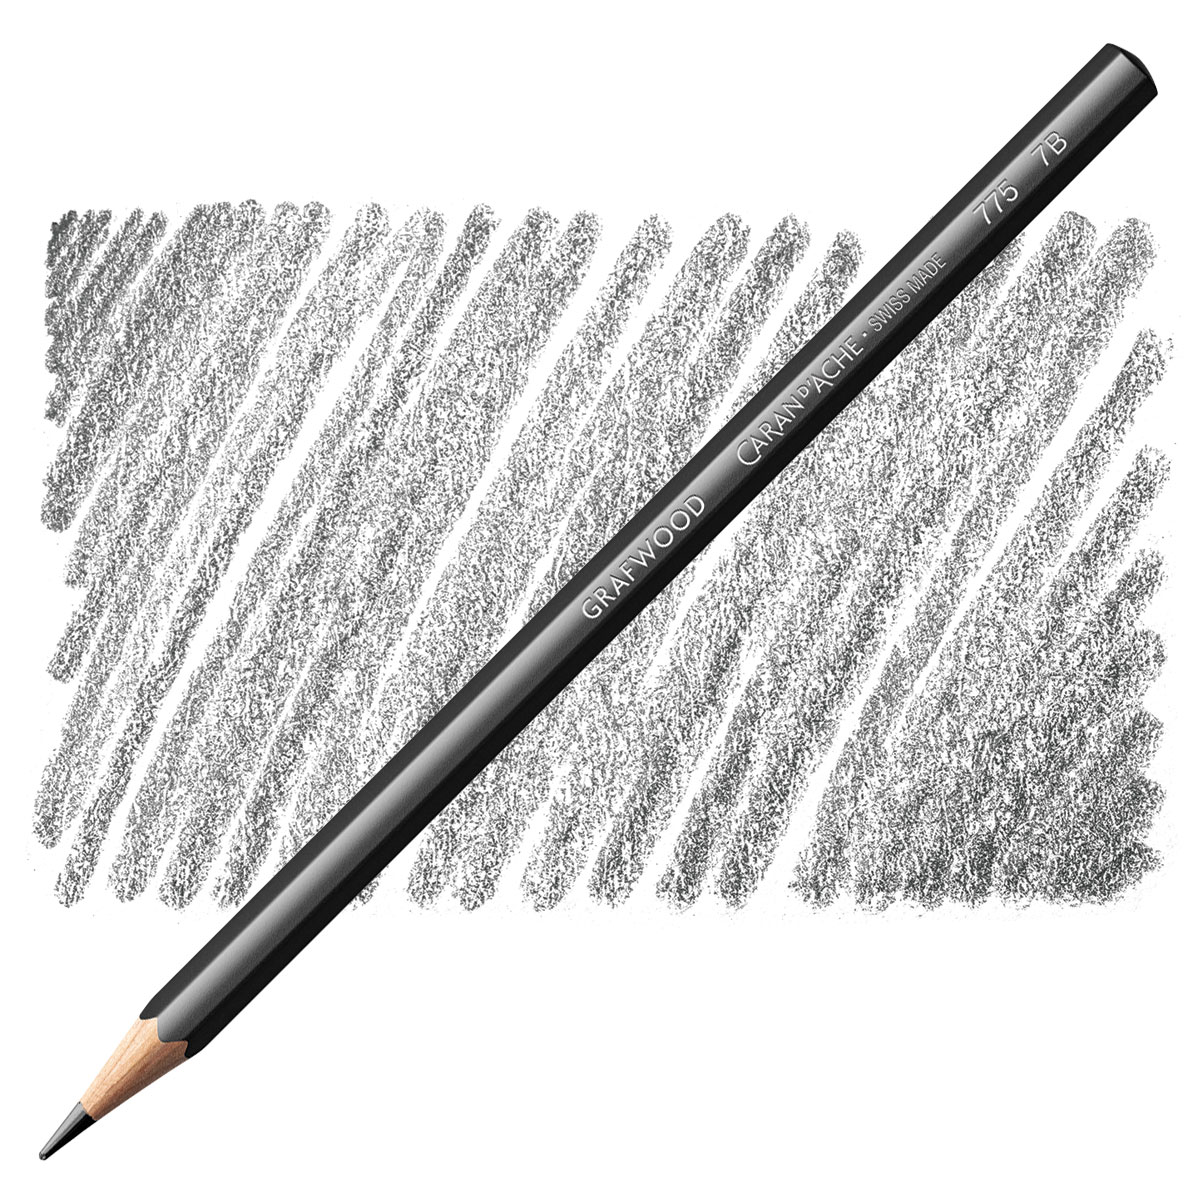 Caran d'Ache Grafwood Pencils and Sets